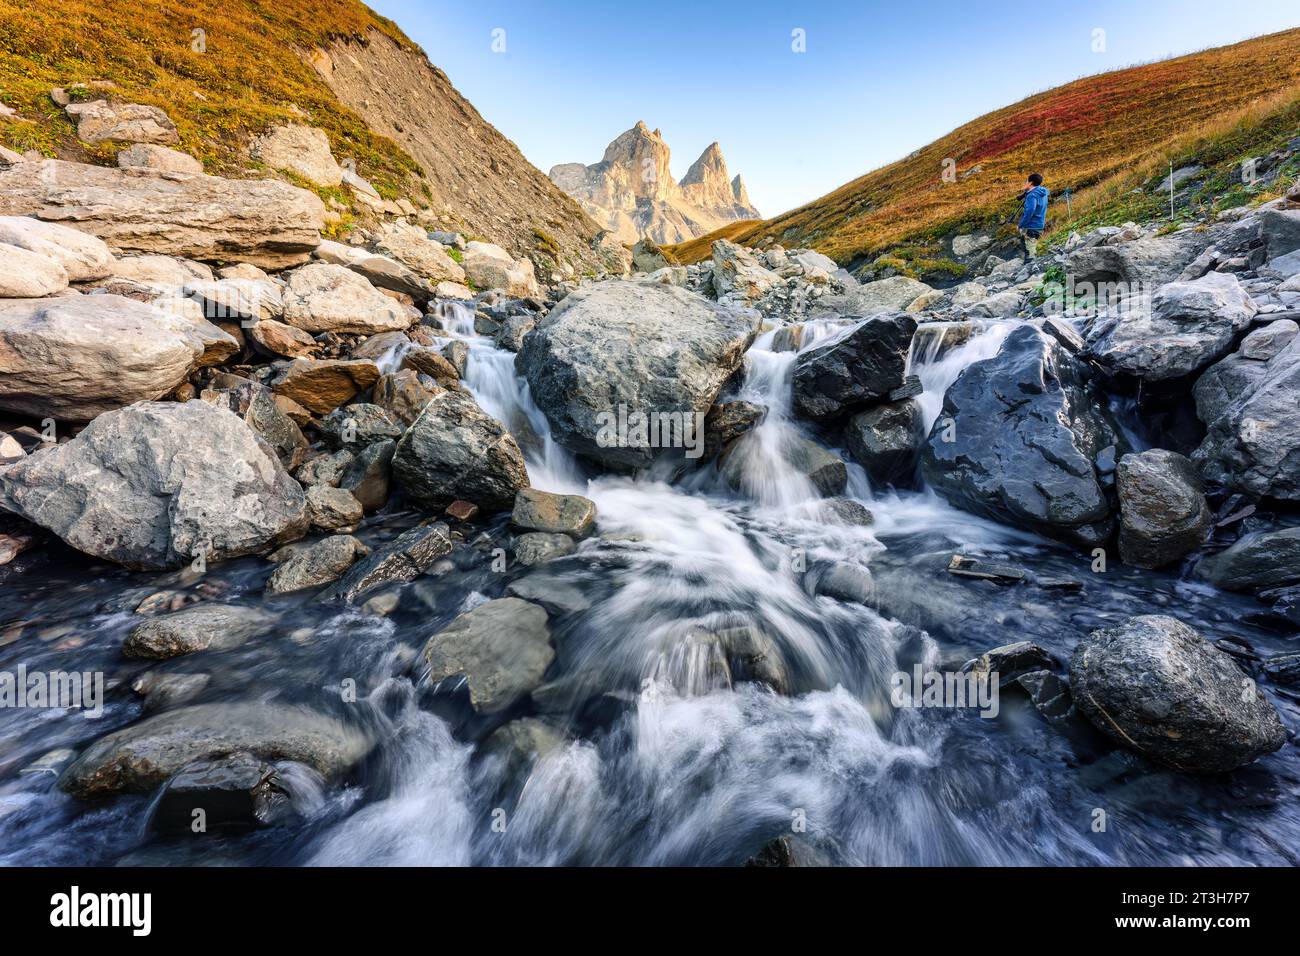 Dramatische Landschaft mit drei Gipfeln und Wasserfall, die im Herbst in Savoie, Frankreich, im Tal von Aiguilles dArves in den französischen alpen fließt Stockfoto